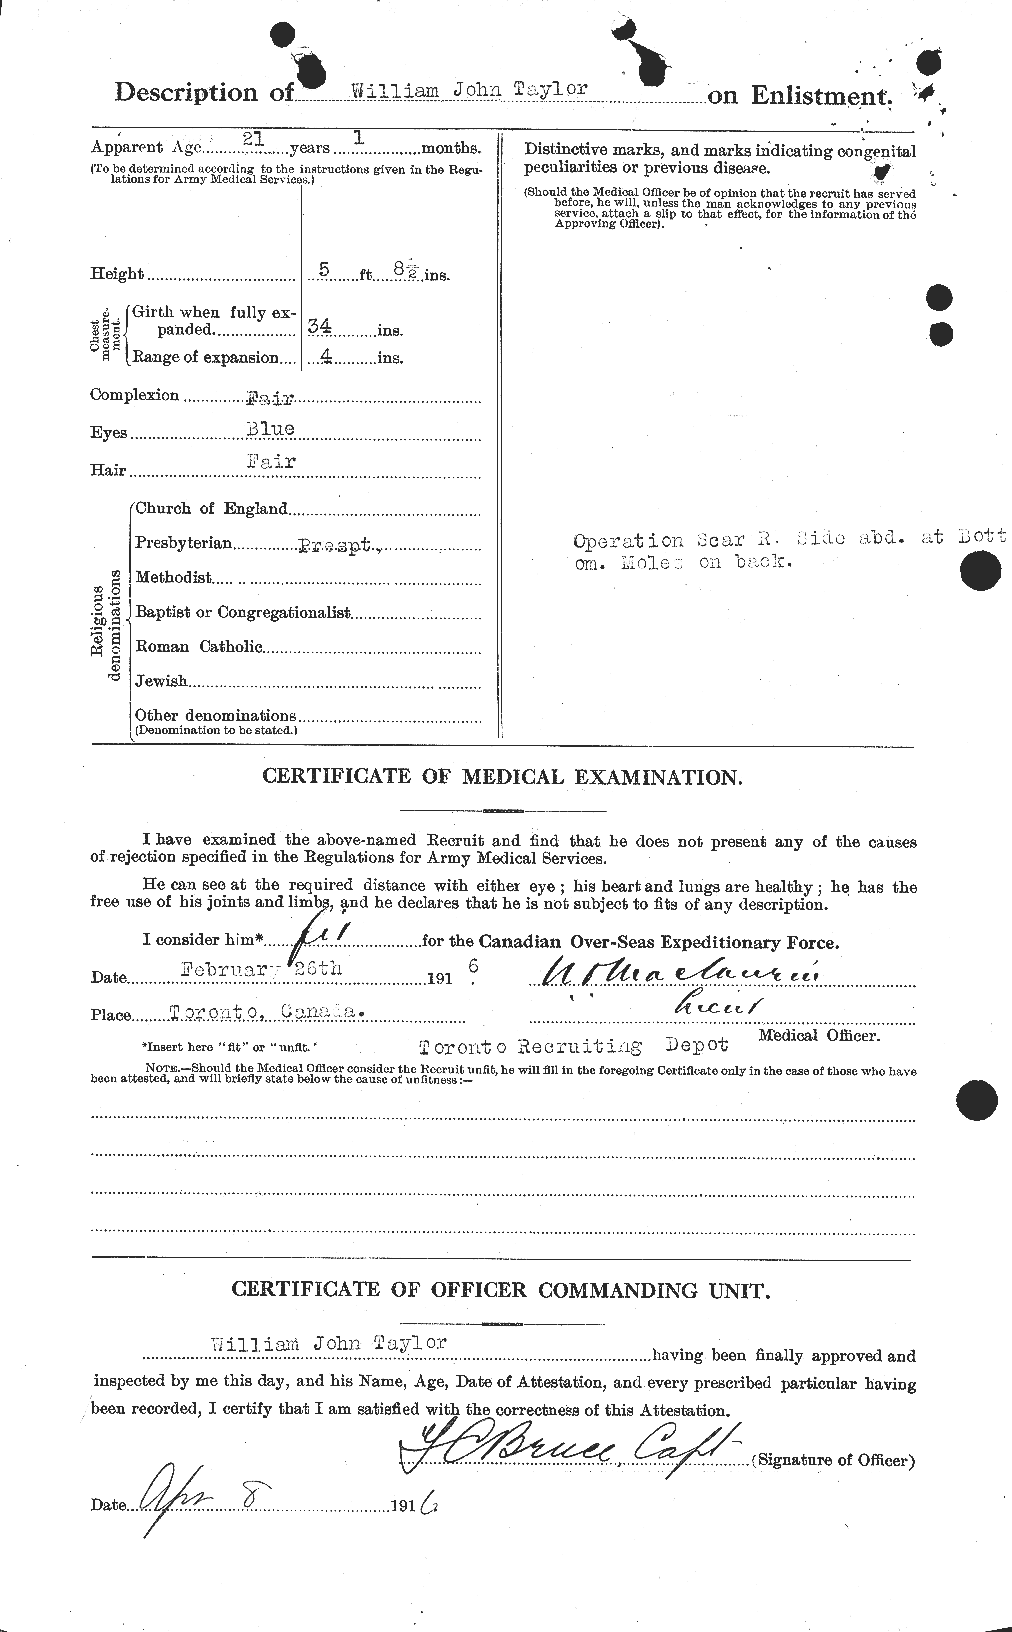 Dossiers du Personnel de la Première Guerre mondiale - CEC 628303b